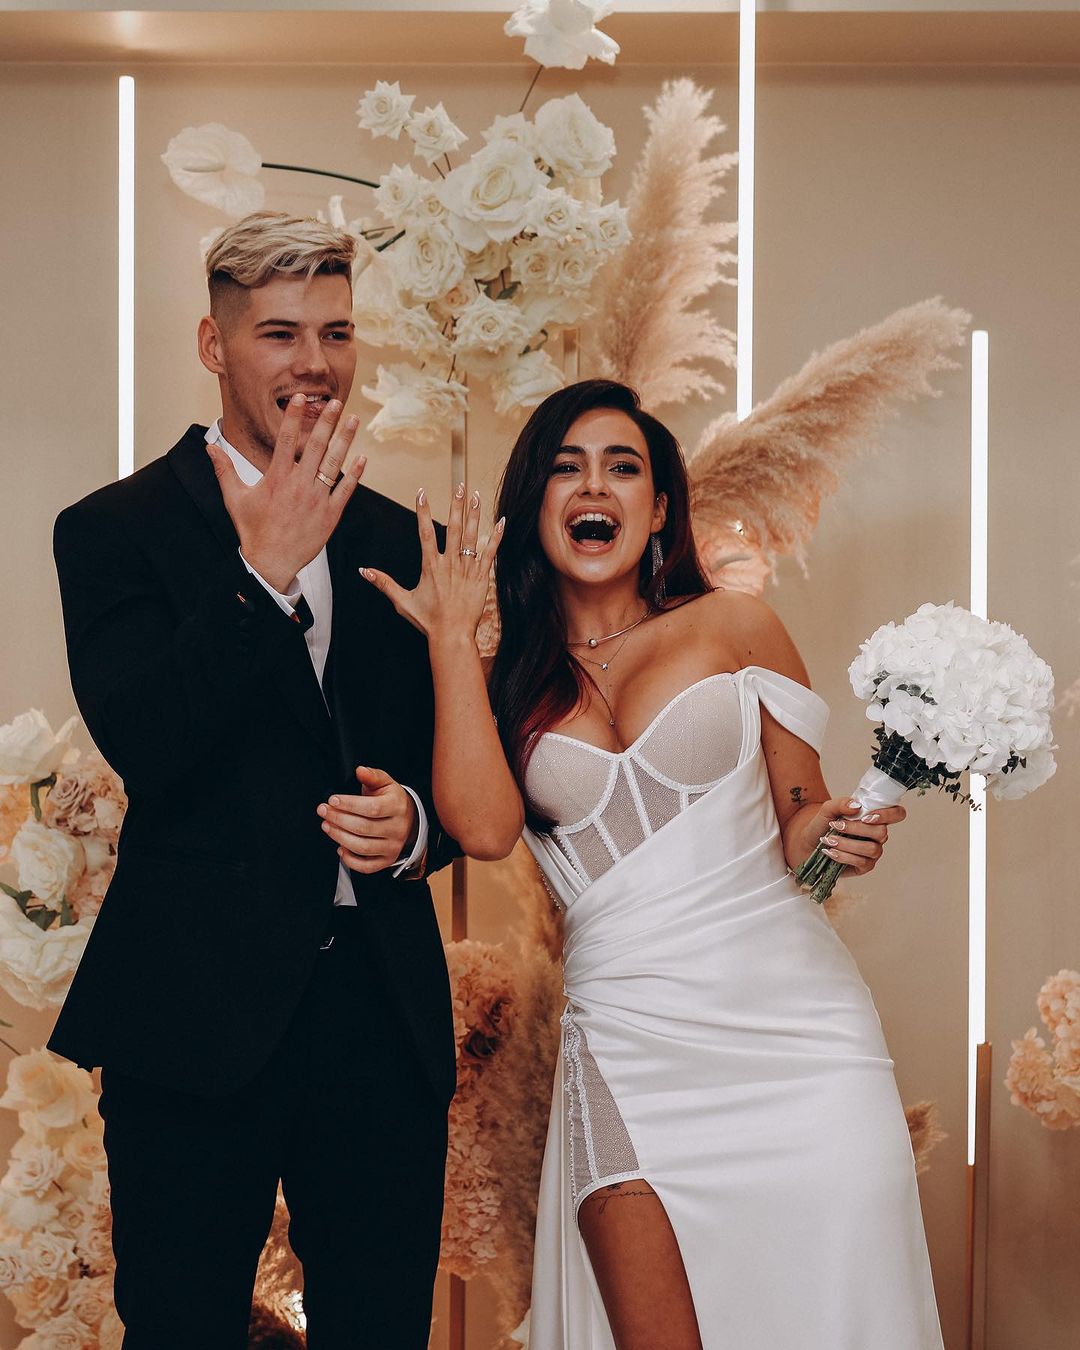 Анна Тринчер и Александр Волошин поженились в прошлом году. Фото: Instagram.com/annatrincher_official/